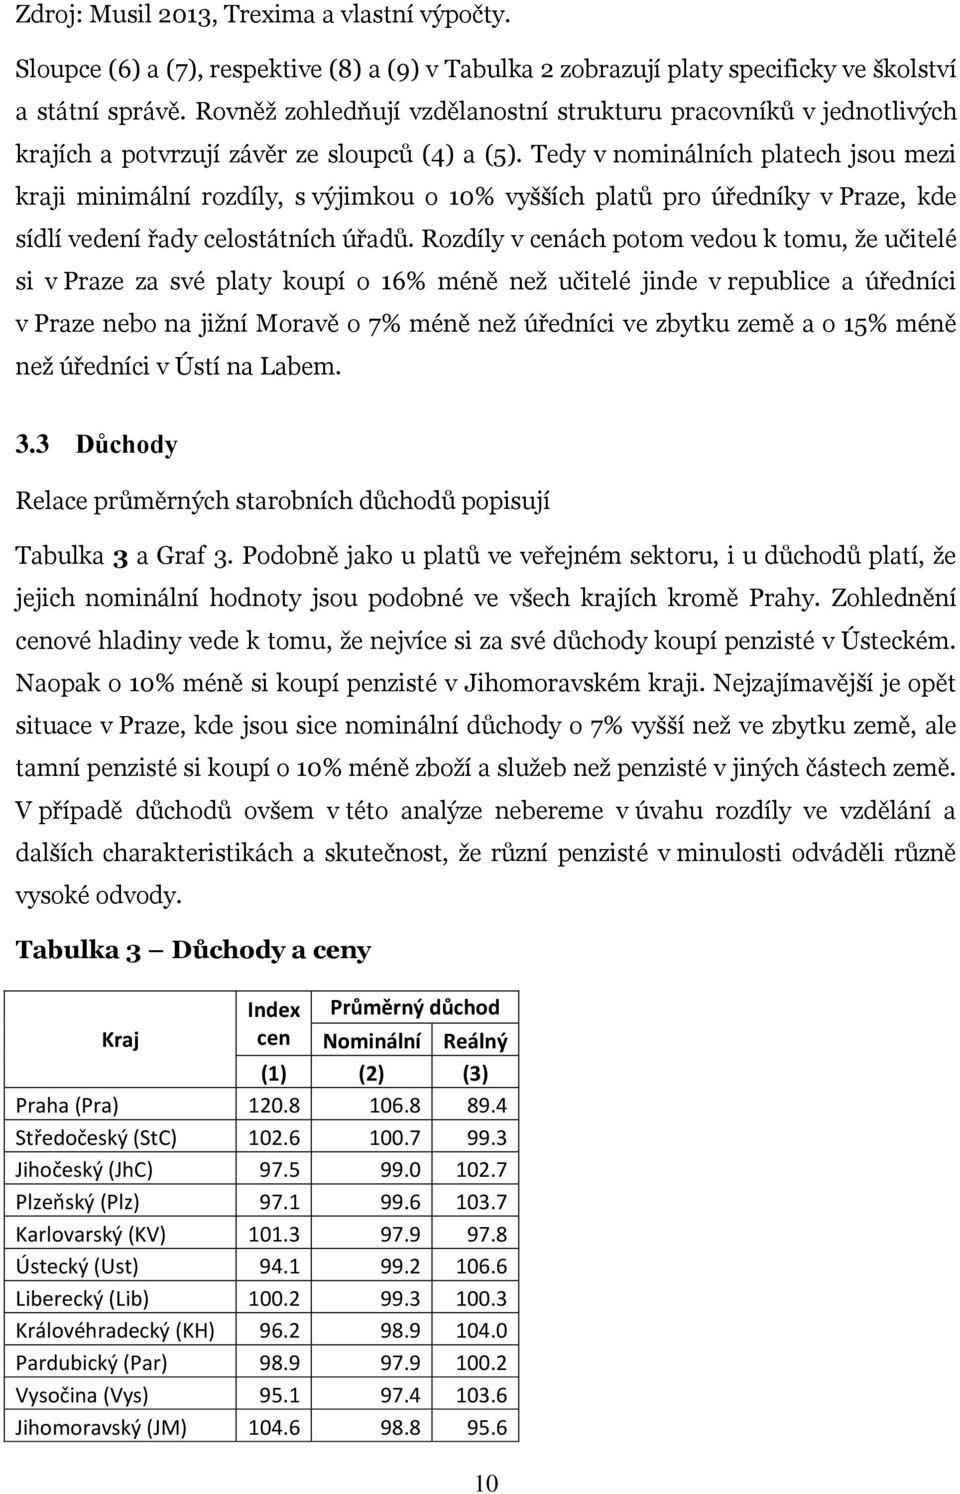 Tedy v nominálních platech jsou mezi kraji minimální rozdíly, s výjimkou o 10% vyšších platů pro úředníky v Praze, kde sídlí vedení řady celostátních úřadů.